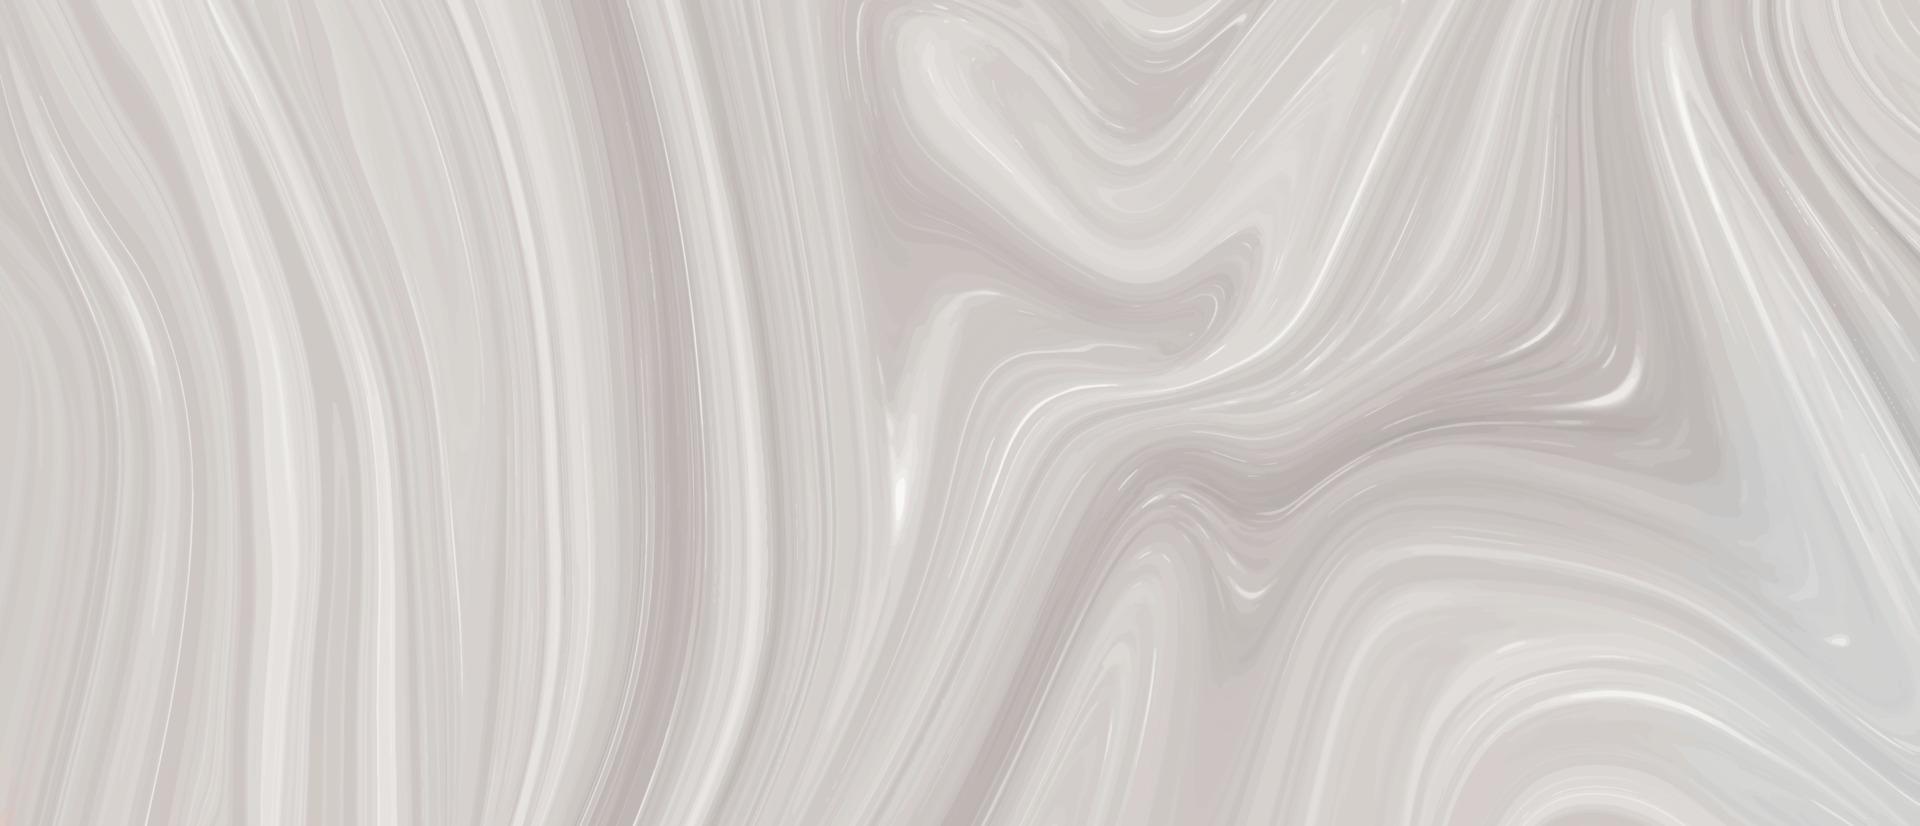 abstrakte verflüssigungslinie hintergrundillustration. marmor textur. Farbspritzer. bunter und ausgefallener farbiger verflüssigter hintergrund. glänzende Textur aus flüssiger Acrylfarbe. abstrakte schwarze, weiße marmorbeschaffenheit. vektor